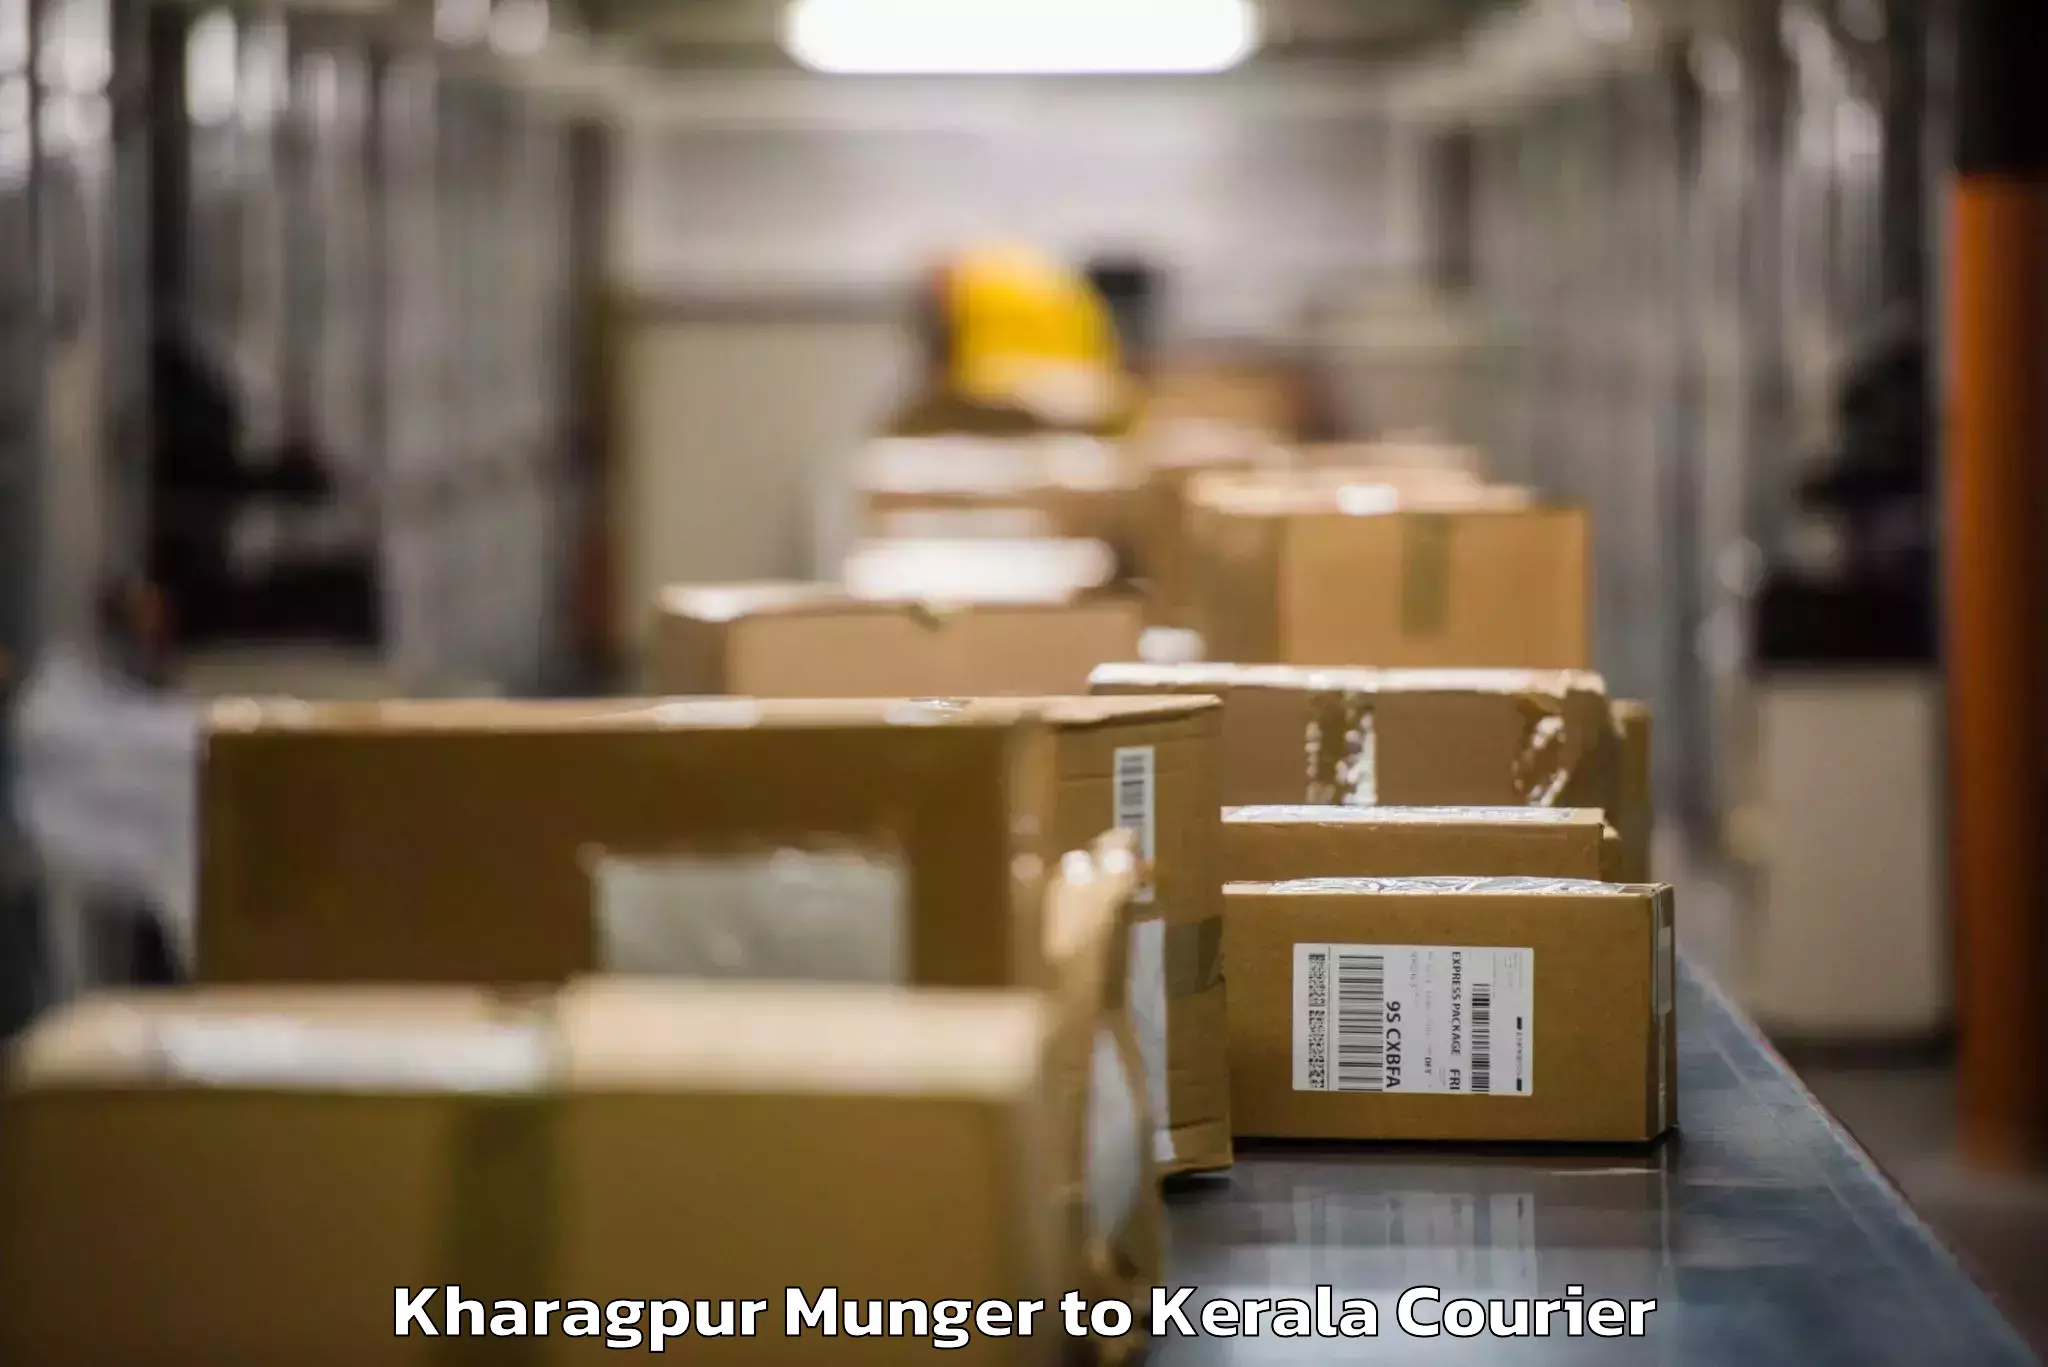 Luggage transport service Kharagpur Munger to Alakode